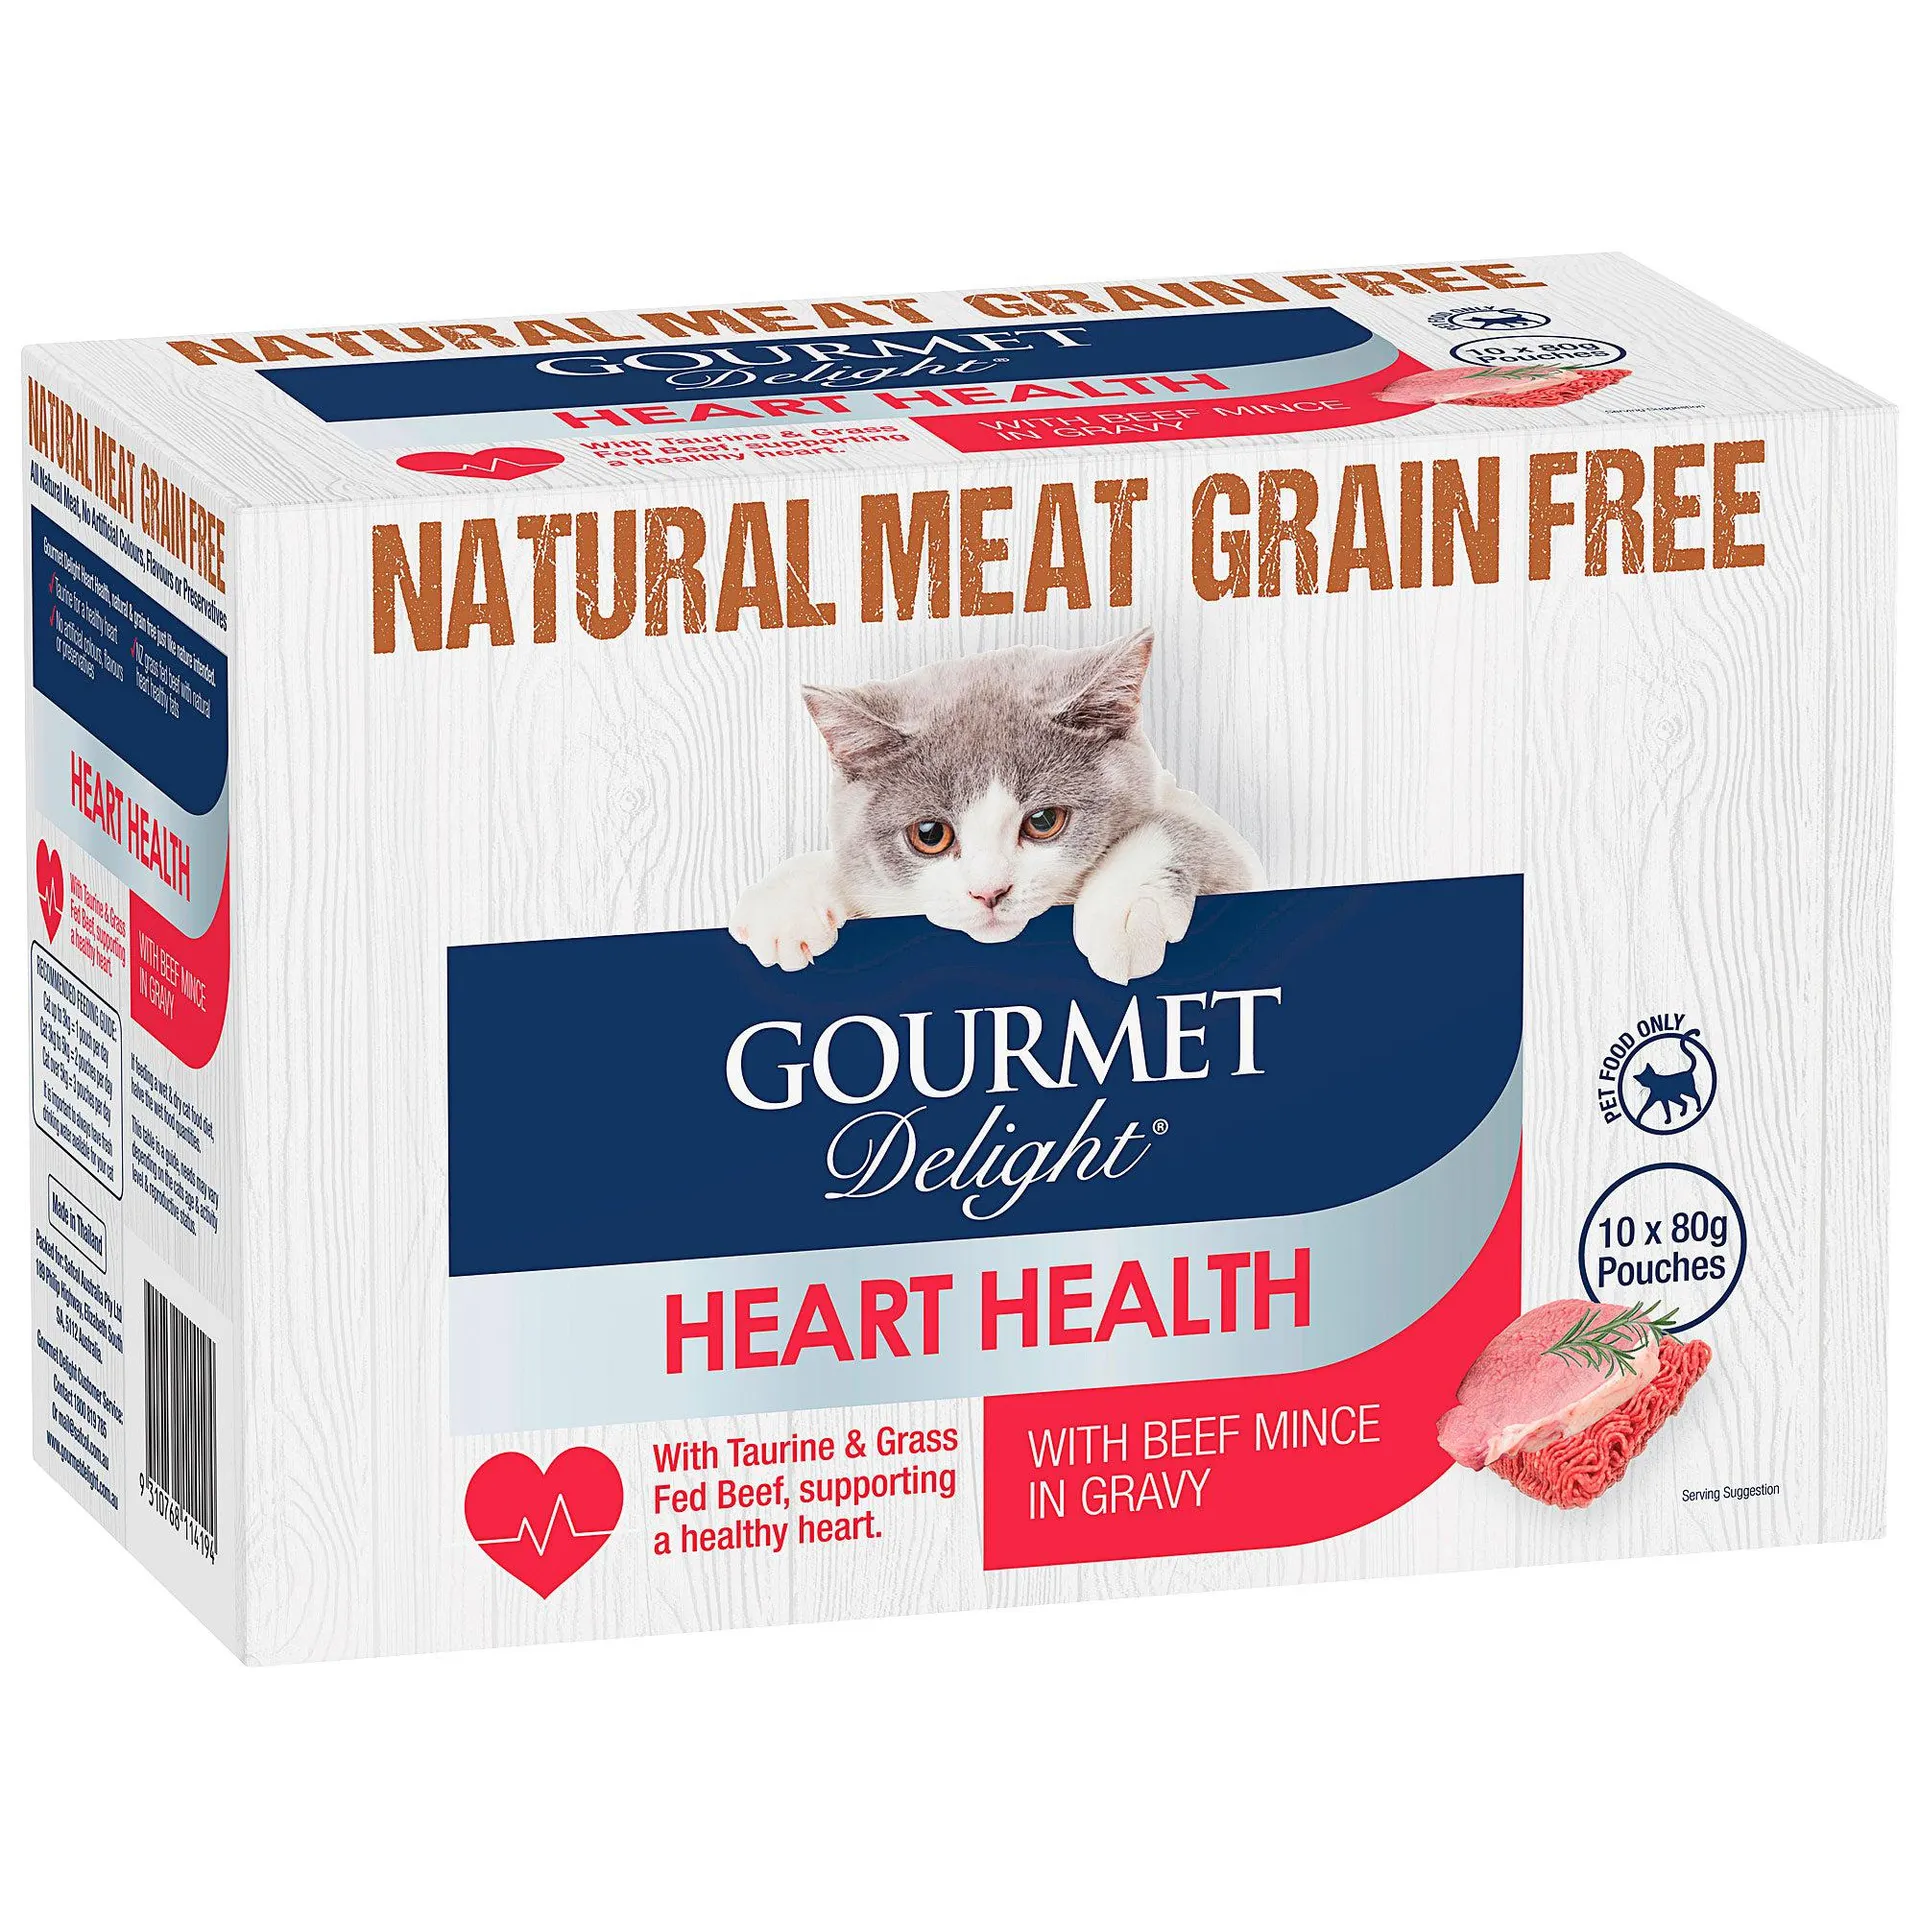 Gourmet Delight Heart Health Beef Mince in Gravy 10x80g